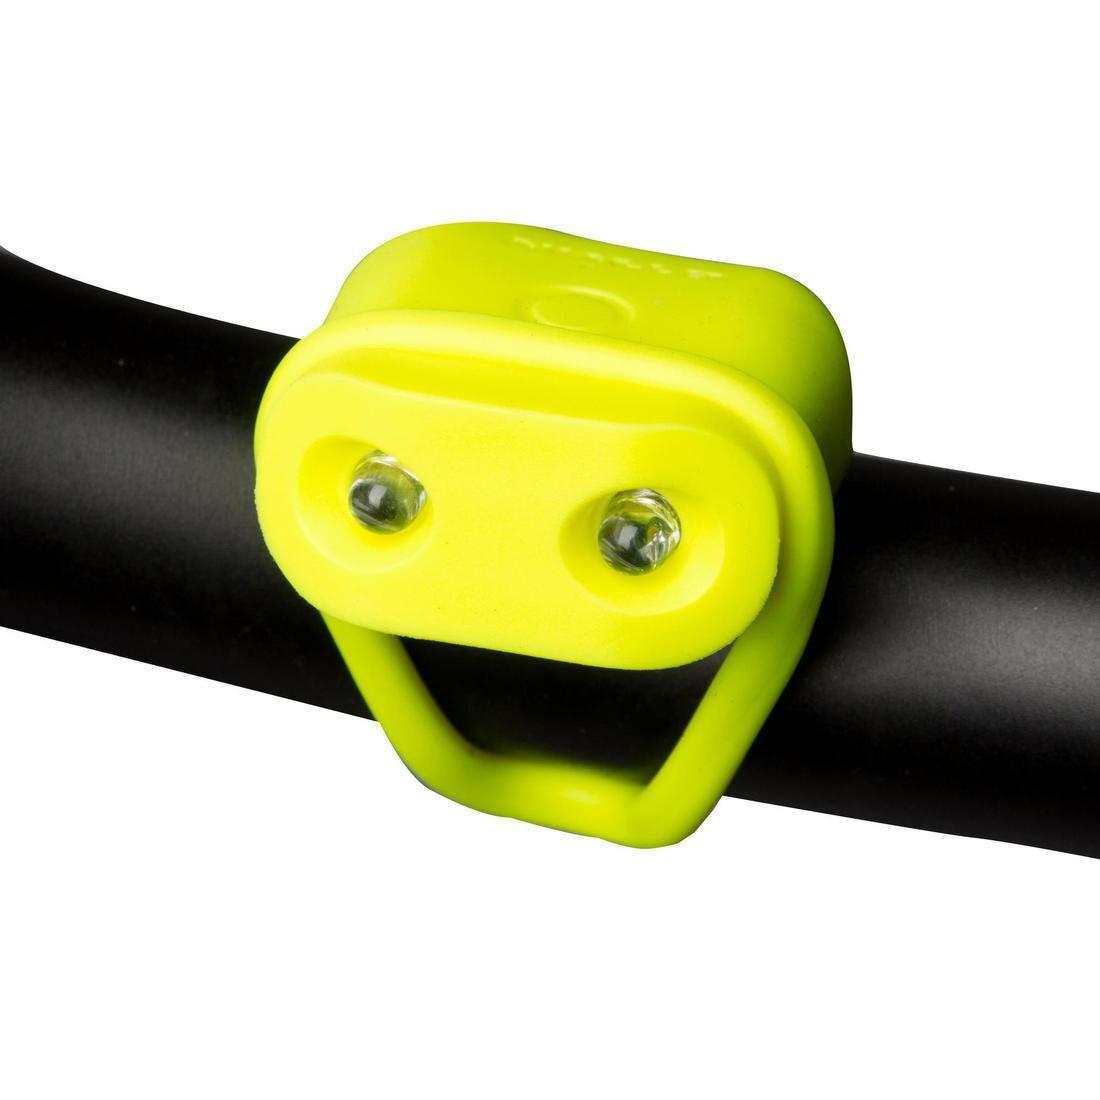 ELOPS - Rear LED Battery-Powe Bike Light, Yellow